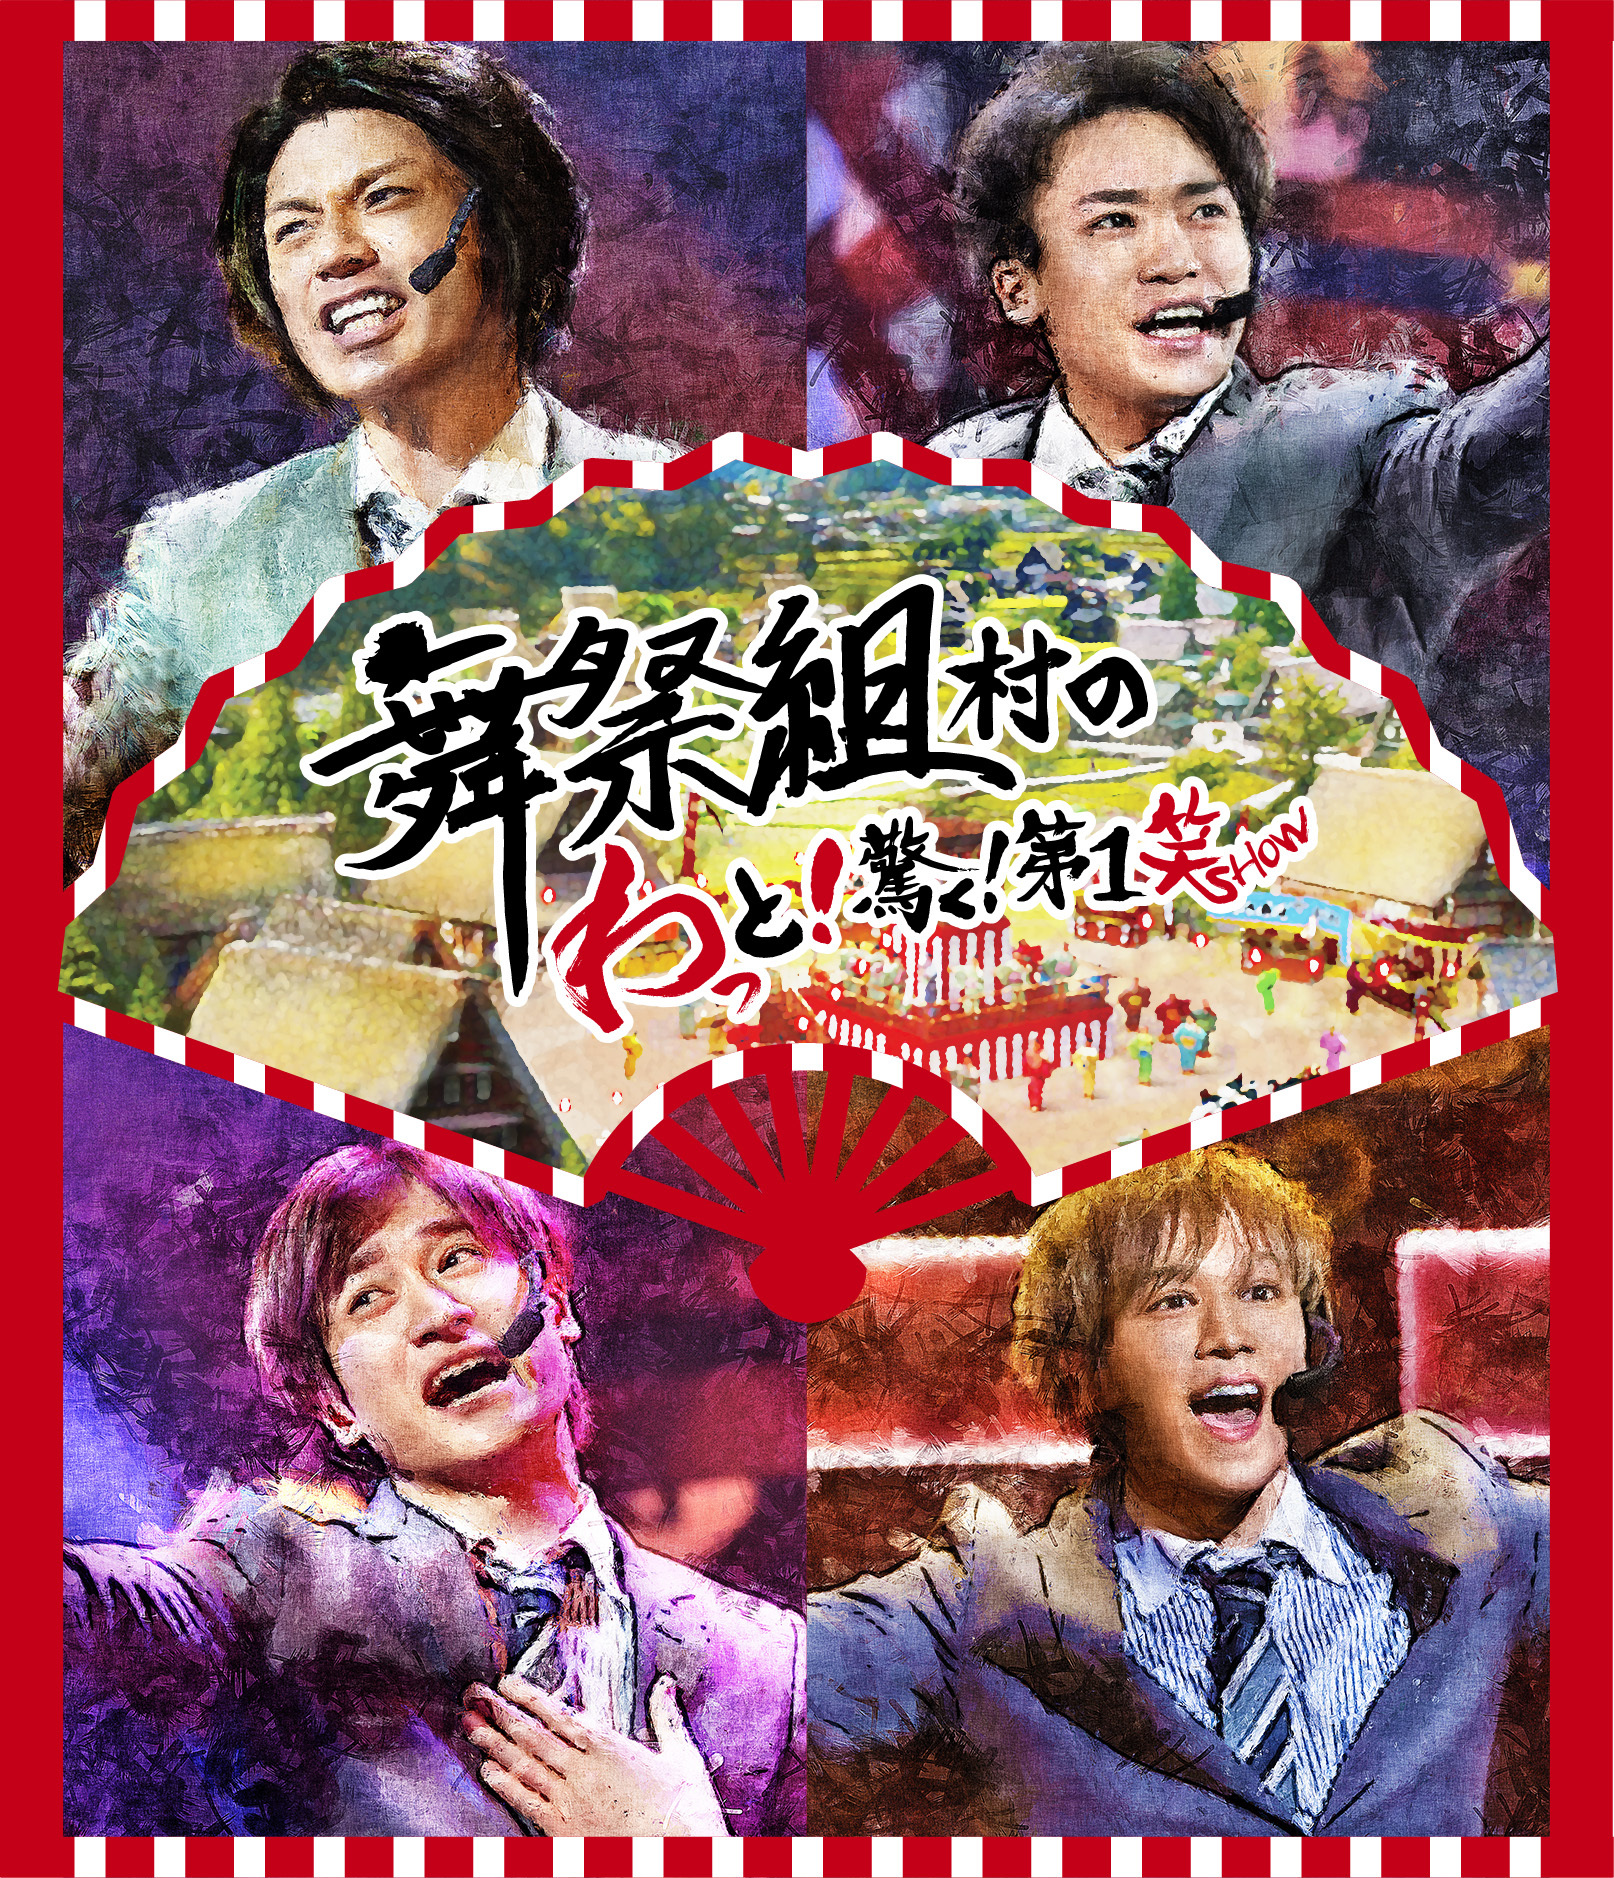 舞祭組ライブDVD & Blu-ray『舞祭組村のわっと！驚く！第1笑』通常盤